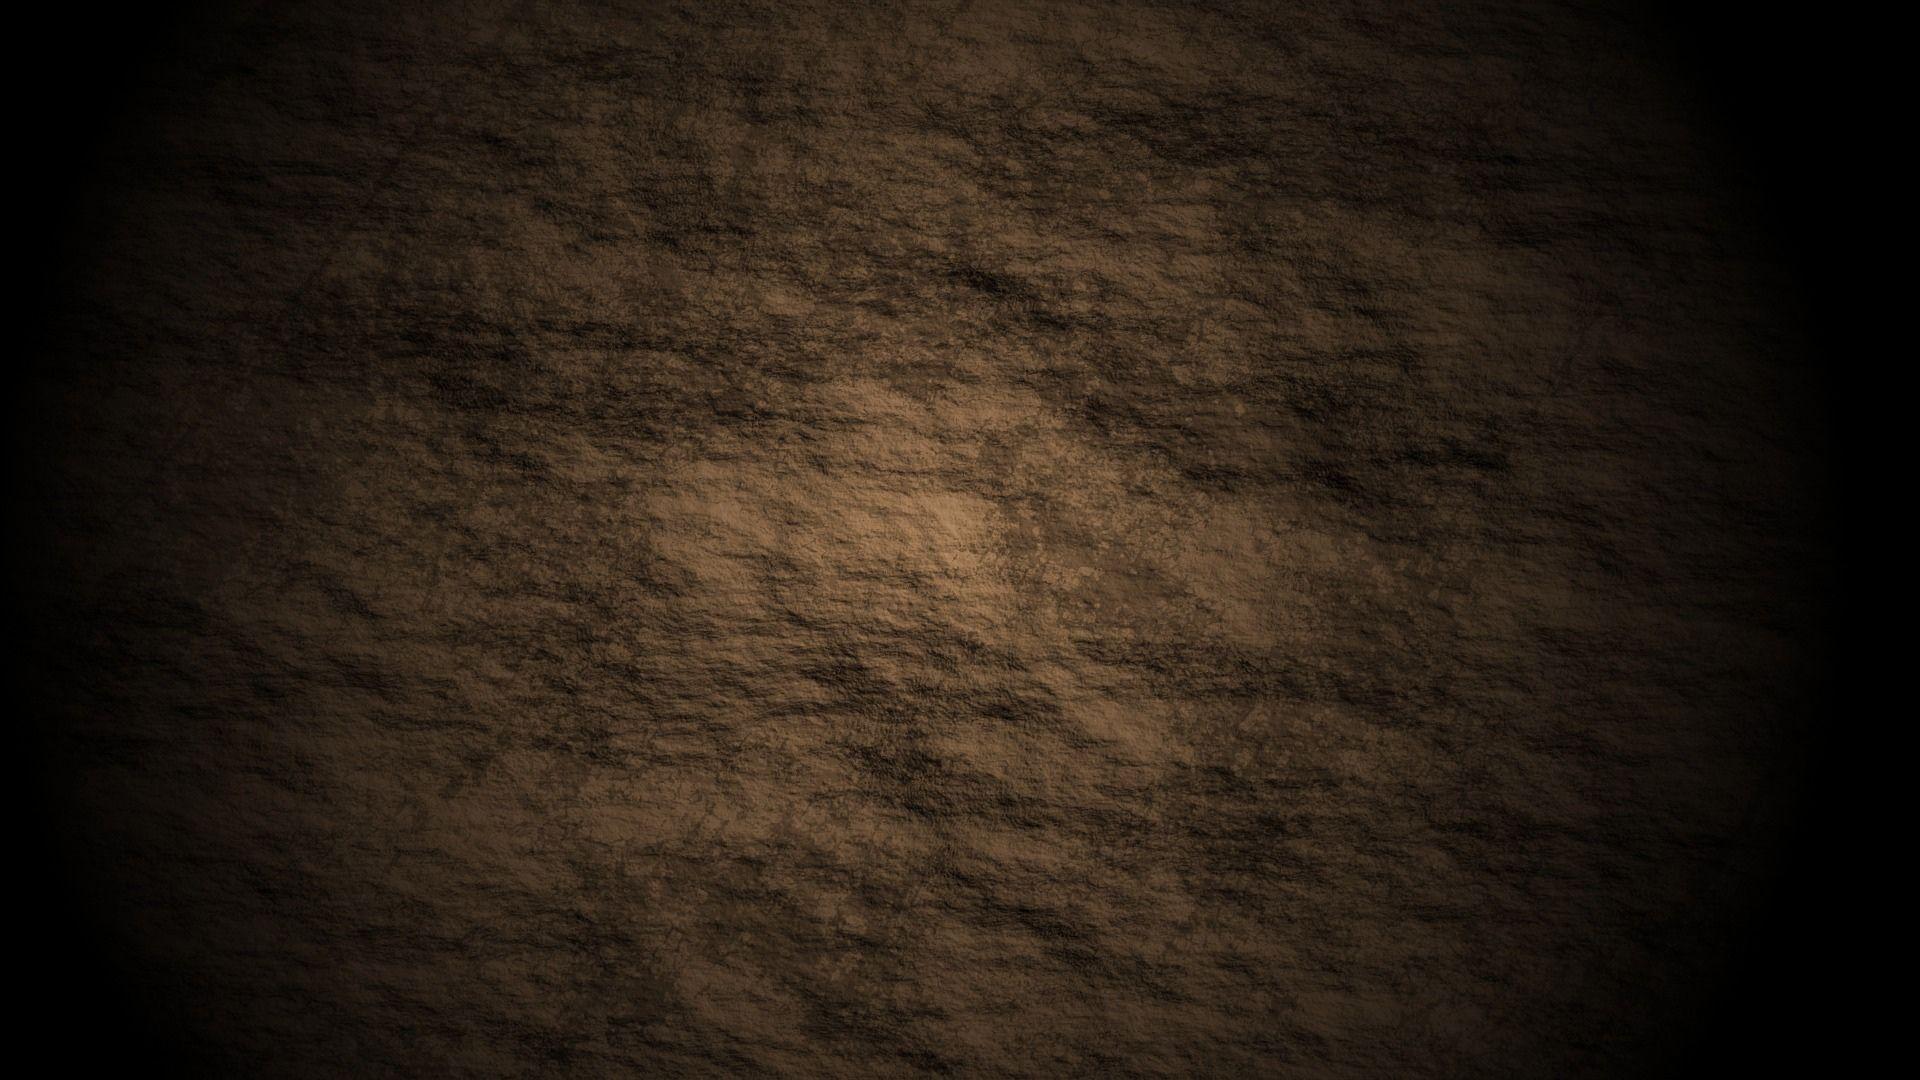 V.75: HD Image of Soil, Ultra HD 4K Soil Wallpaper